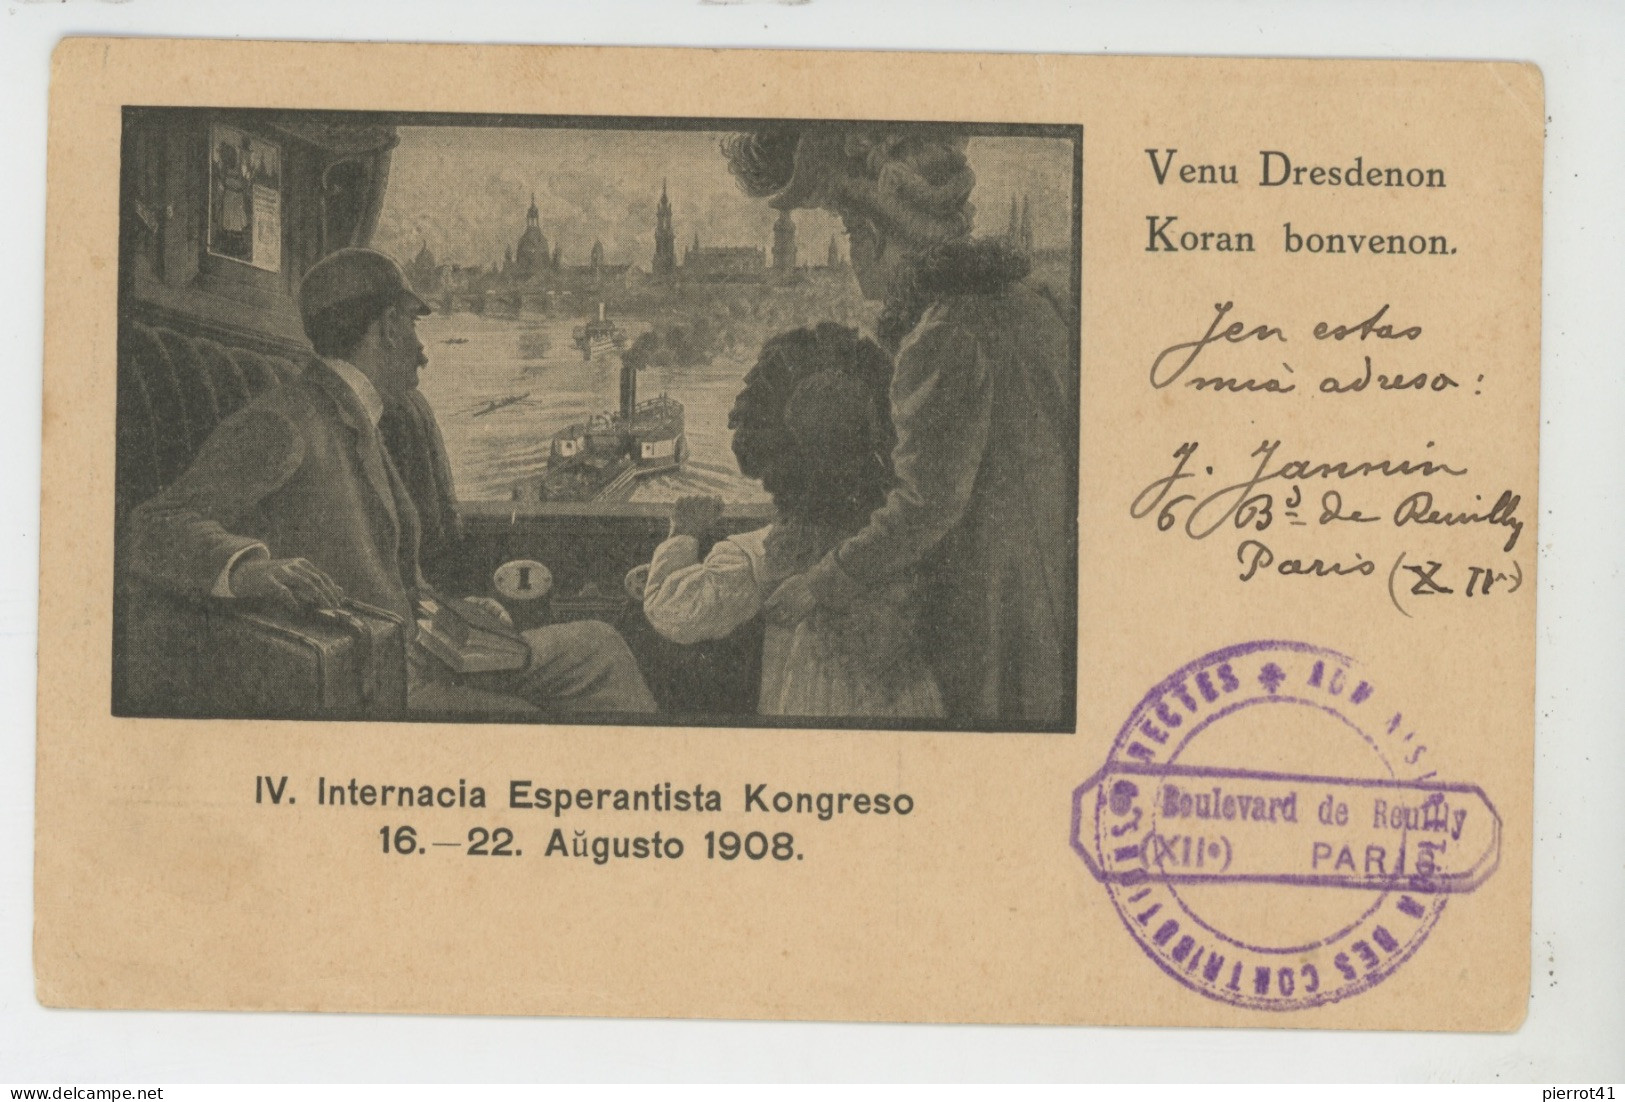 ESPERANTO - IV. INTERNACIA ESPERANTISTA KONGRESO 16-22 AUGUSTO 1908 - Esperanto